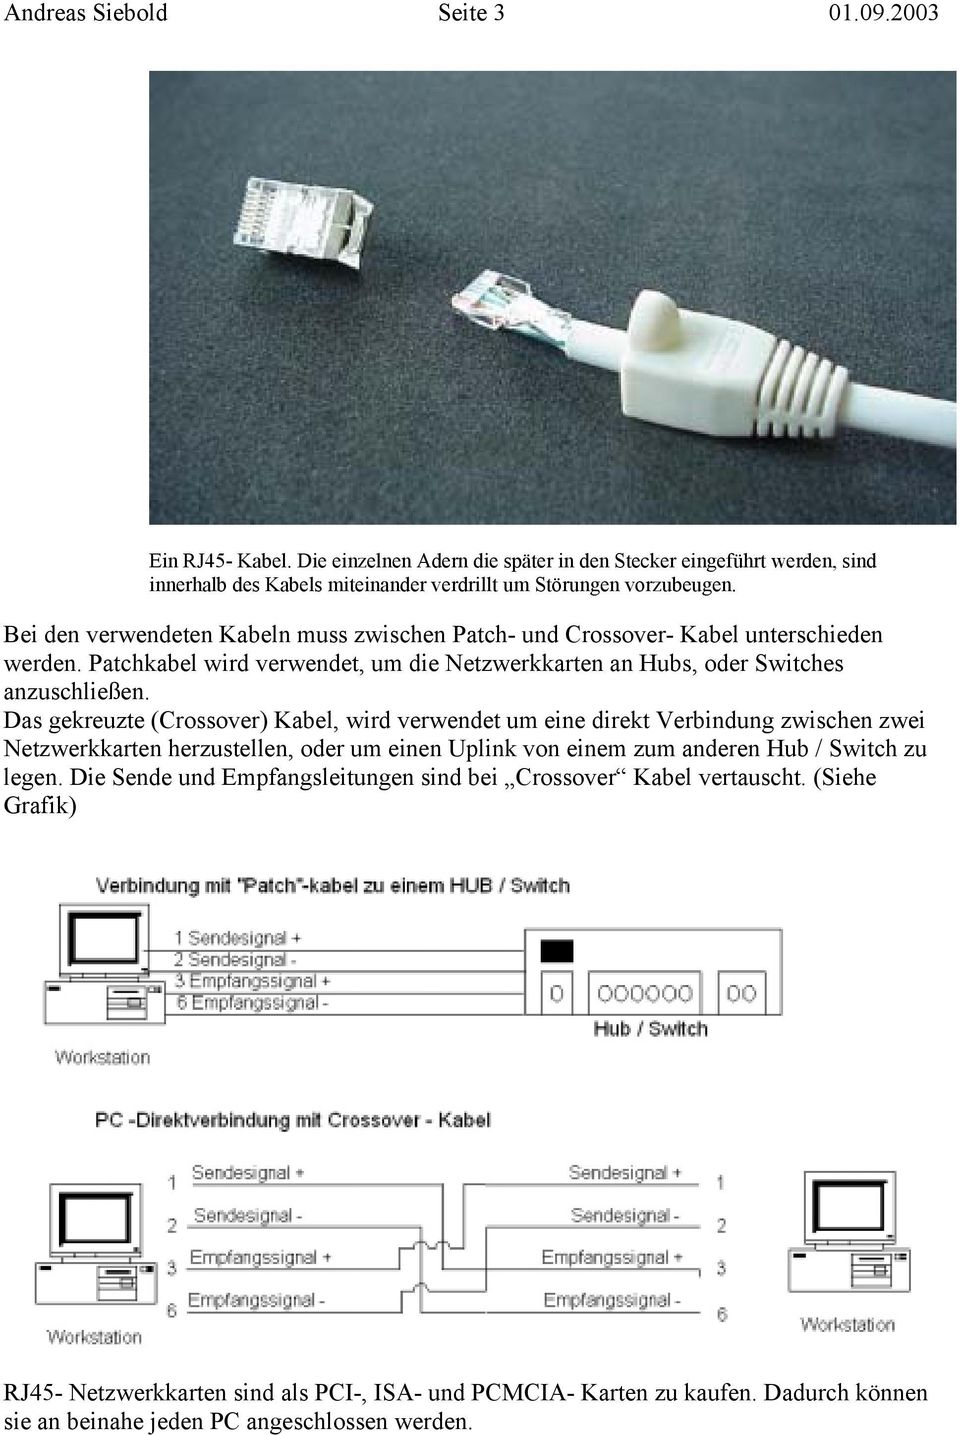 Das gekreuzte (Crossover) Kabel, wird verwendet um eine direkt Verbindung zwischen zwei Netzwerkkarten herzustellen, oder um einen Uplink von einem zum anderen Hub / Switch zu legen.